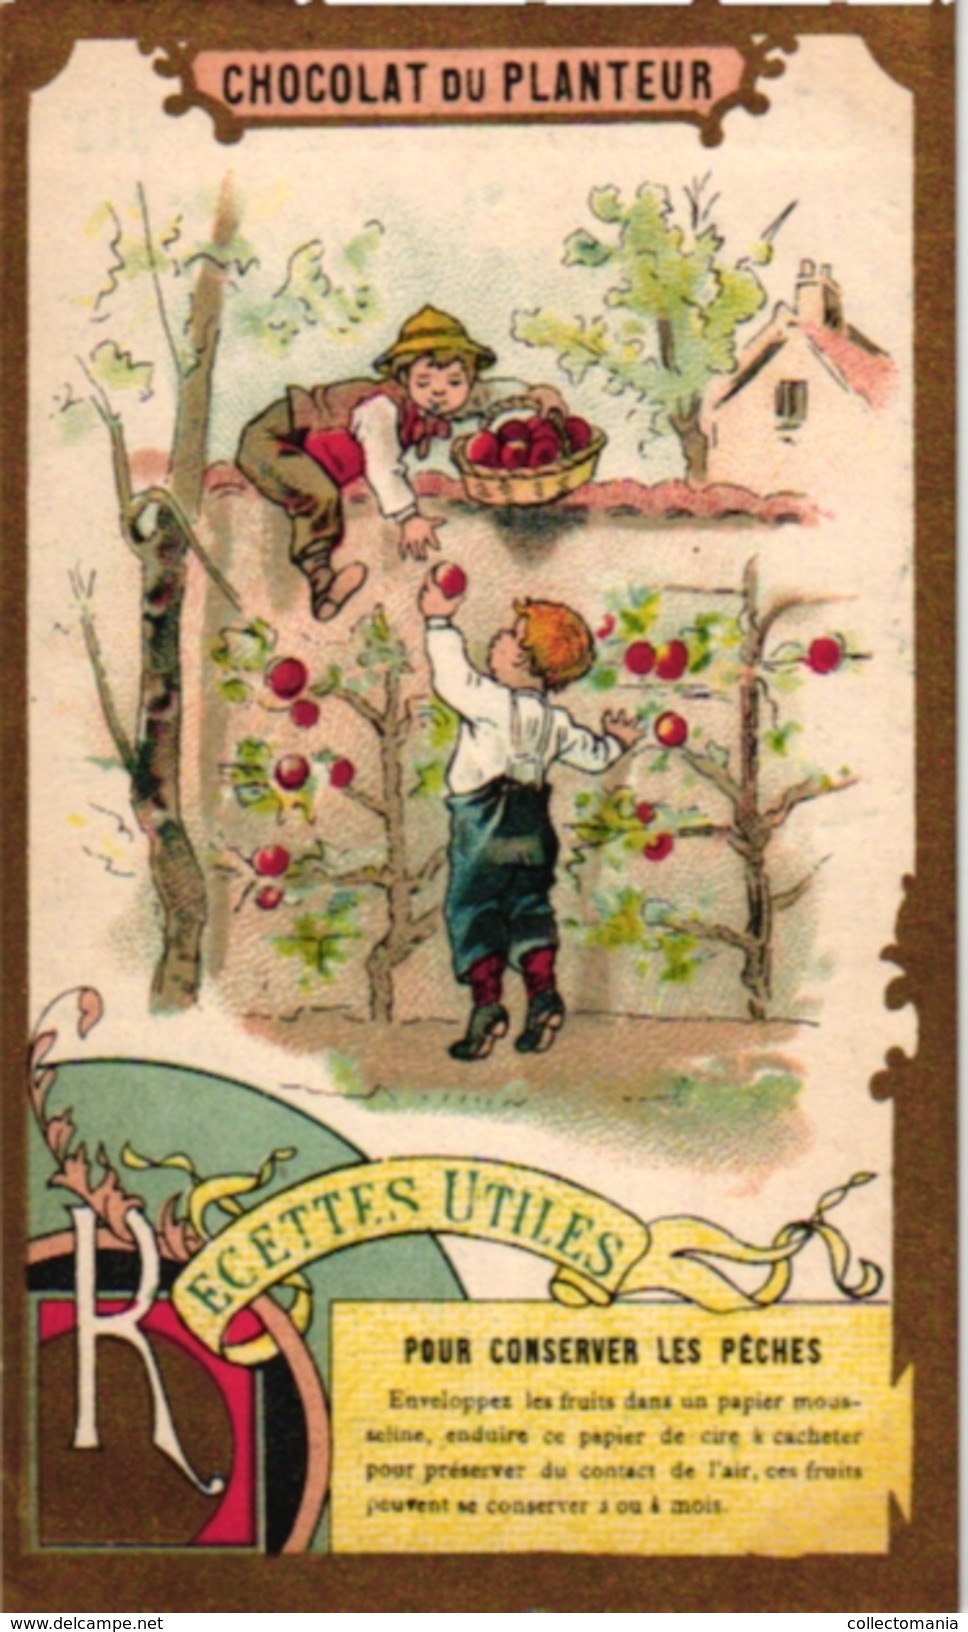 21 Cards C1900 Pub Chocolat du Planteur Recettes Utiles Moyen de... Imp de la Compagnie Coloniale